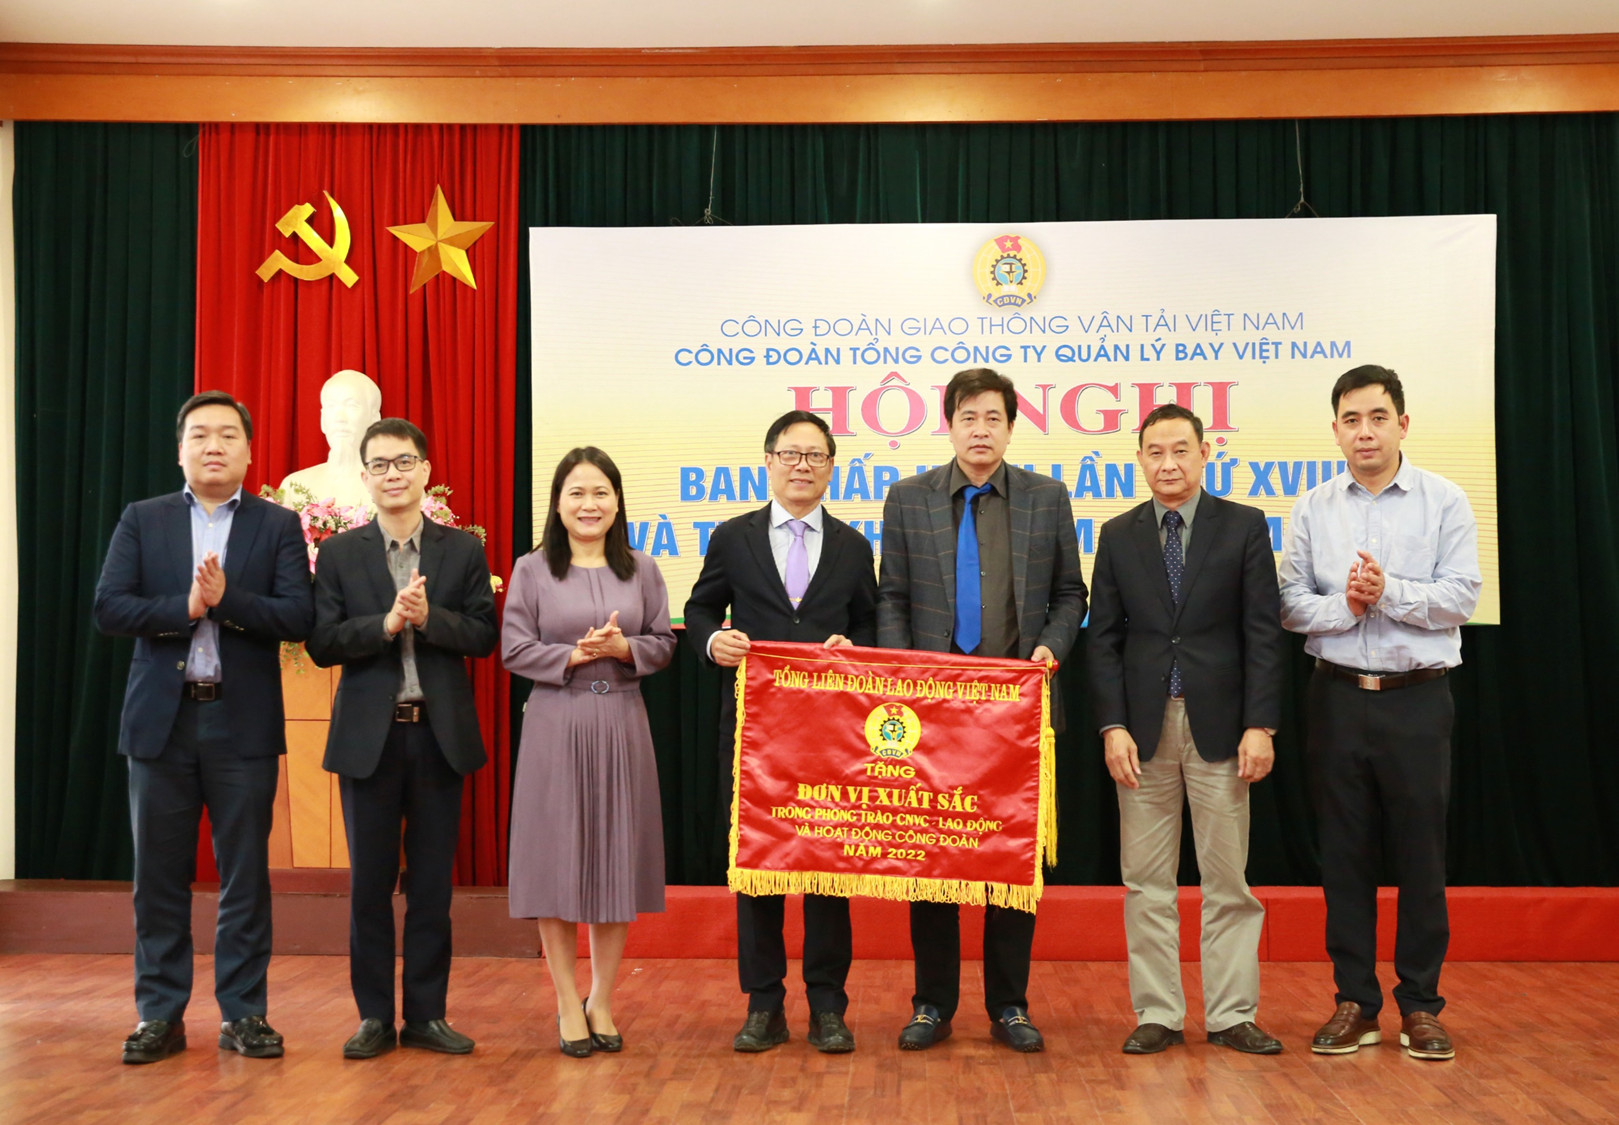 Danh hiệu - Thành tích của Công đoàn Tổng công ty Quản lý bay Việt Nam